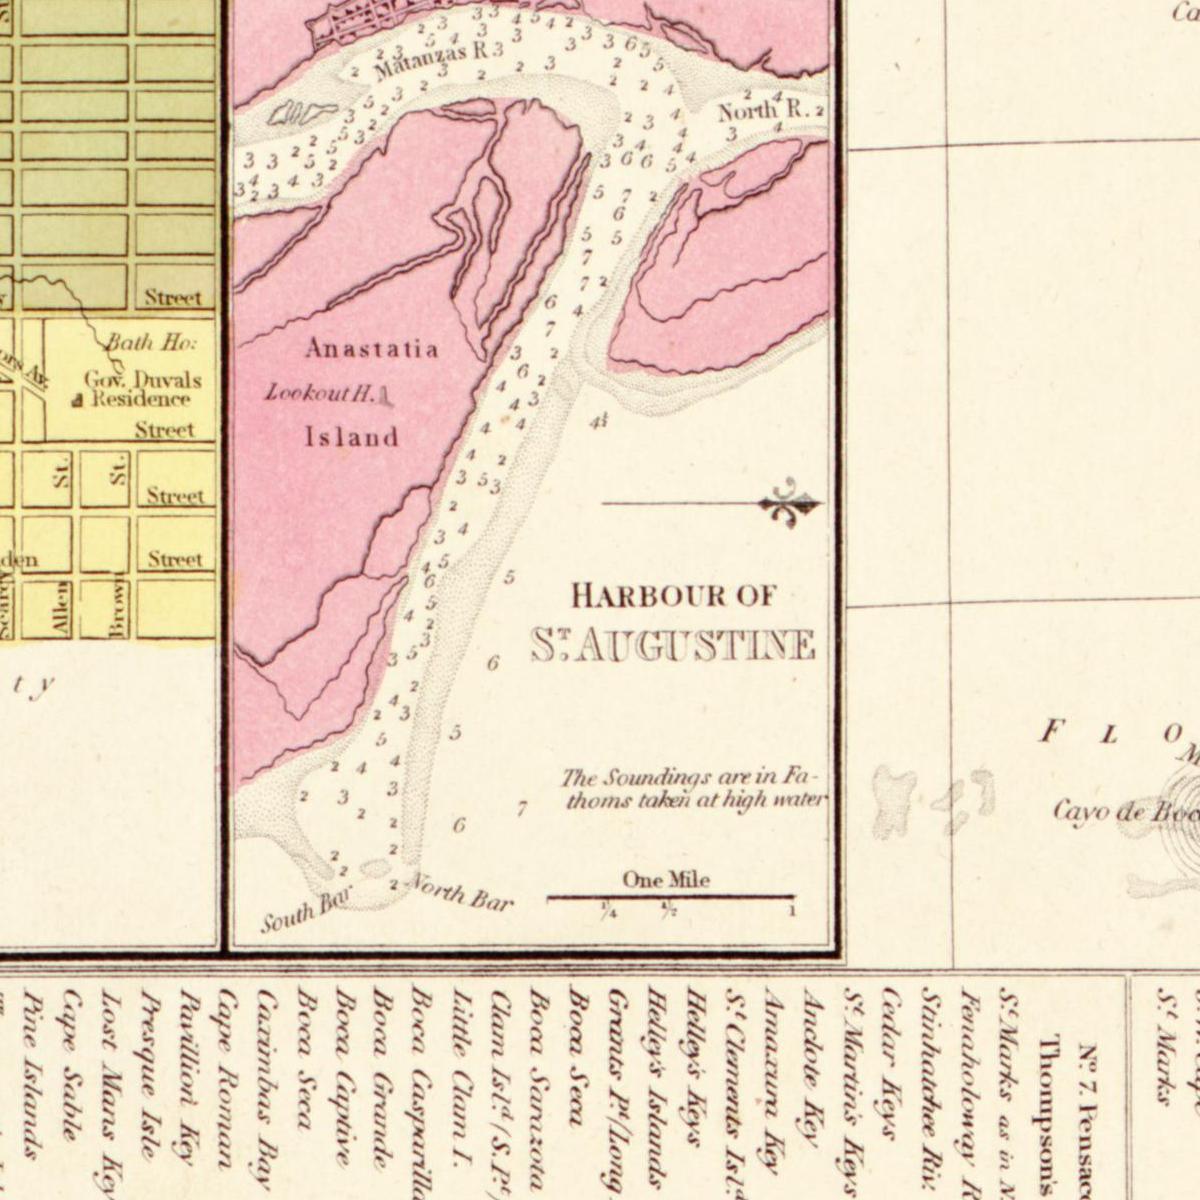 Historische Landkarte Florida um 1849